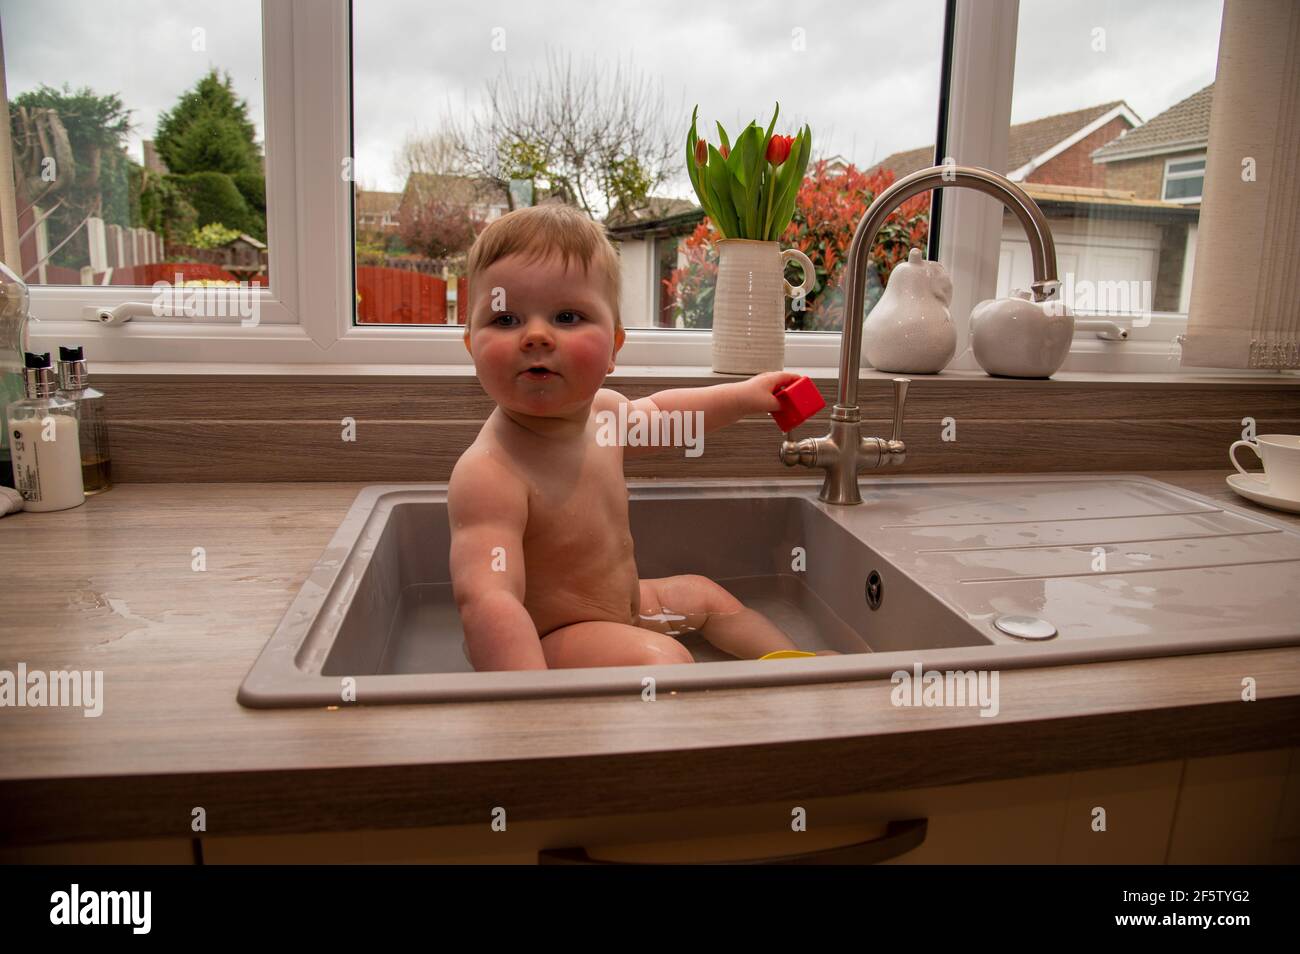 Ein Baby, das in einem Küchenwaschbecken gebadet wird Stockfoto